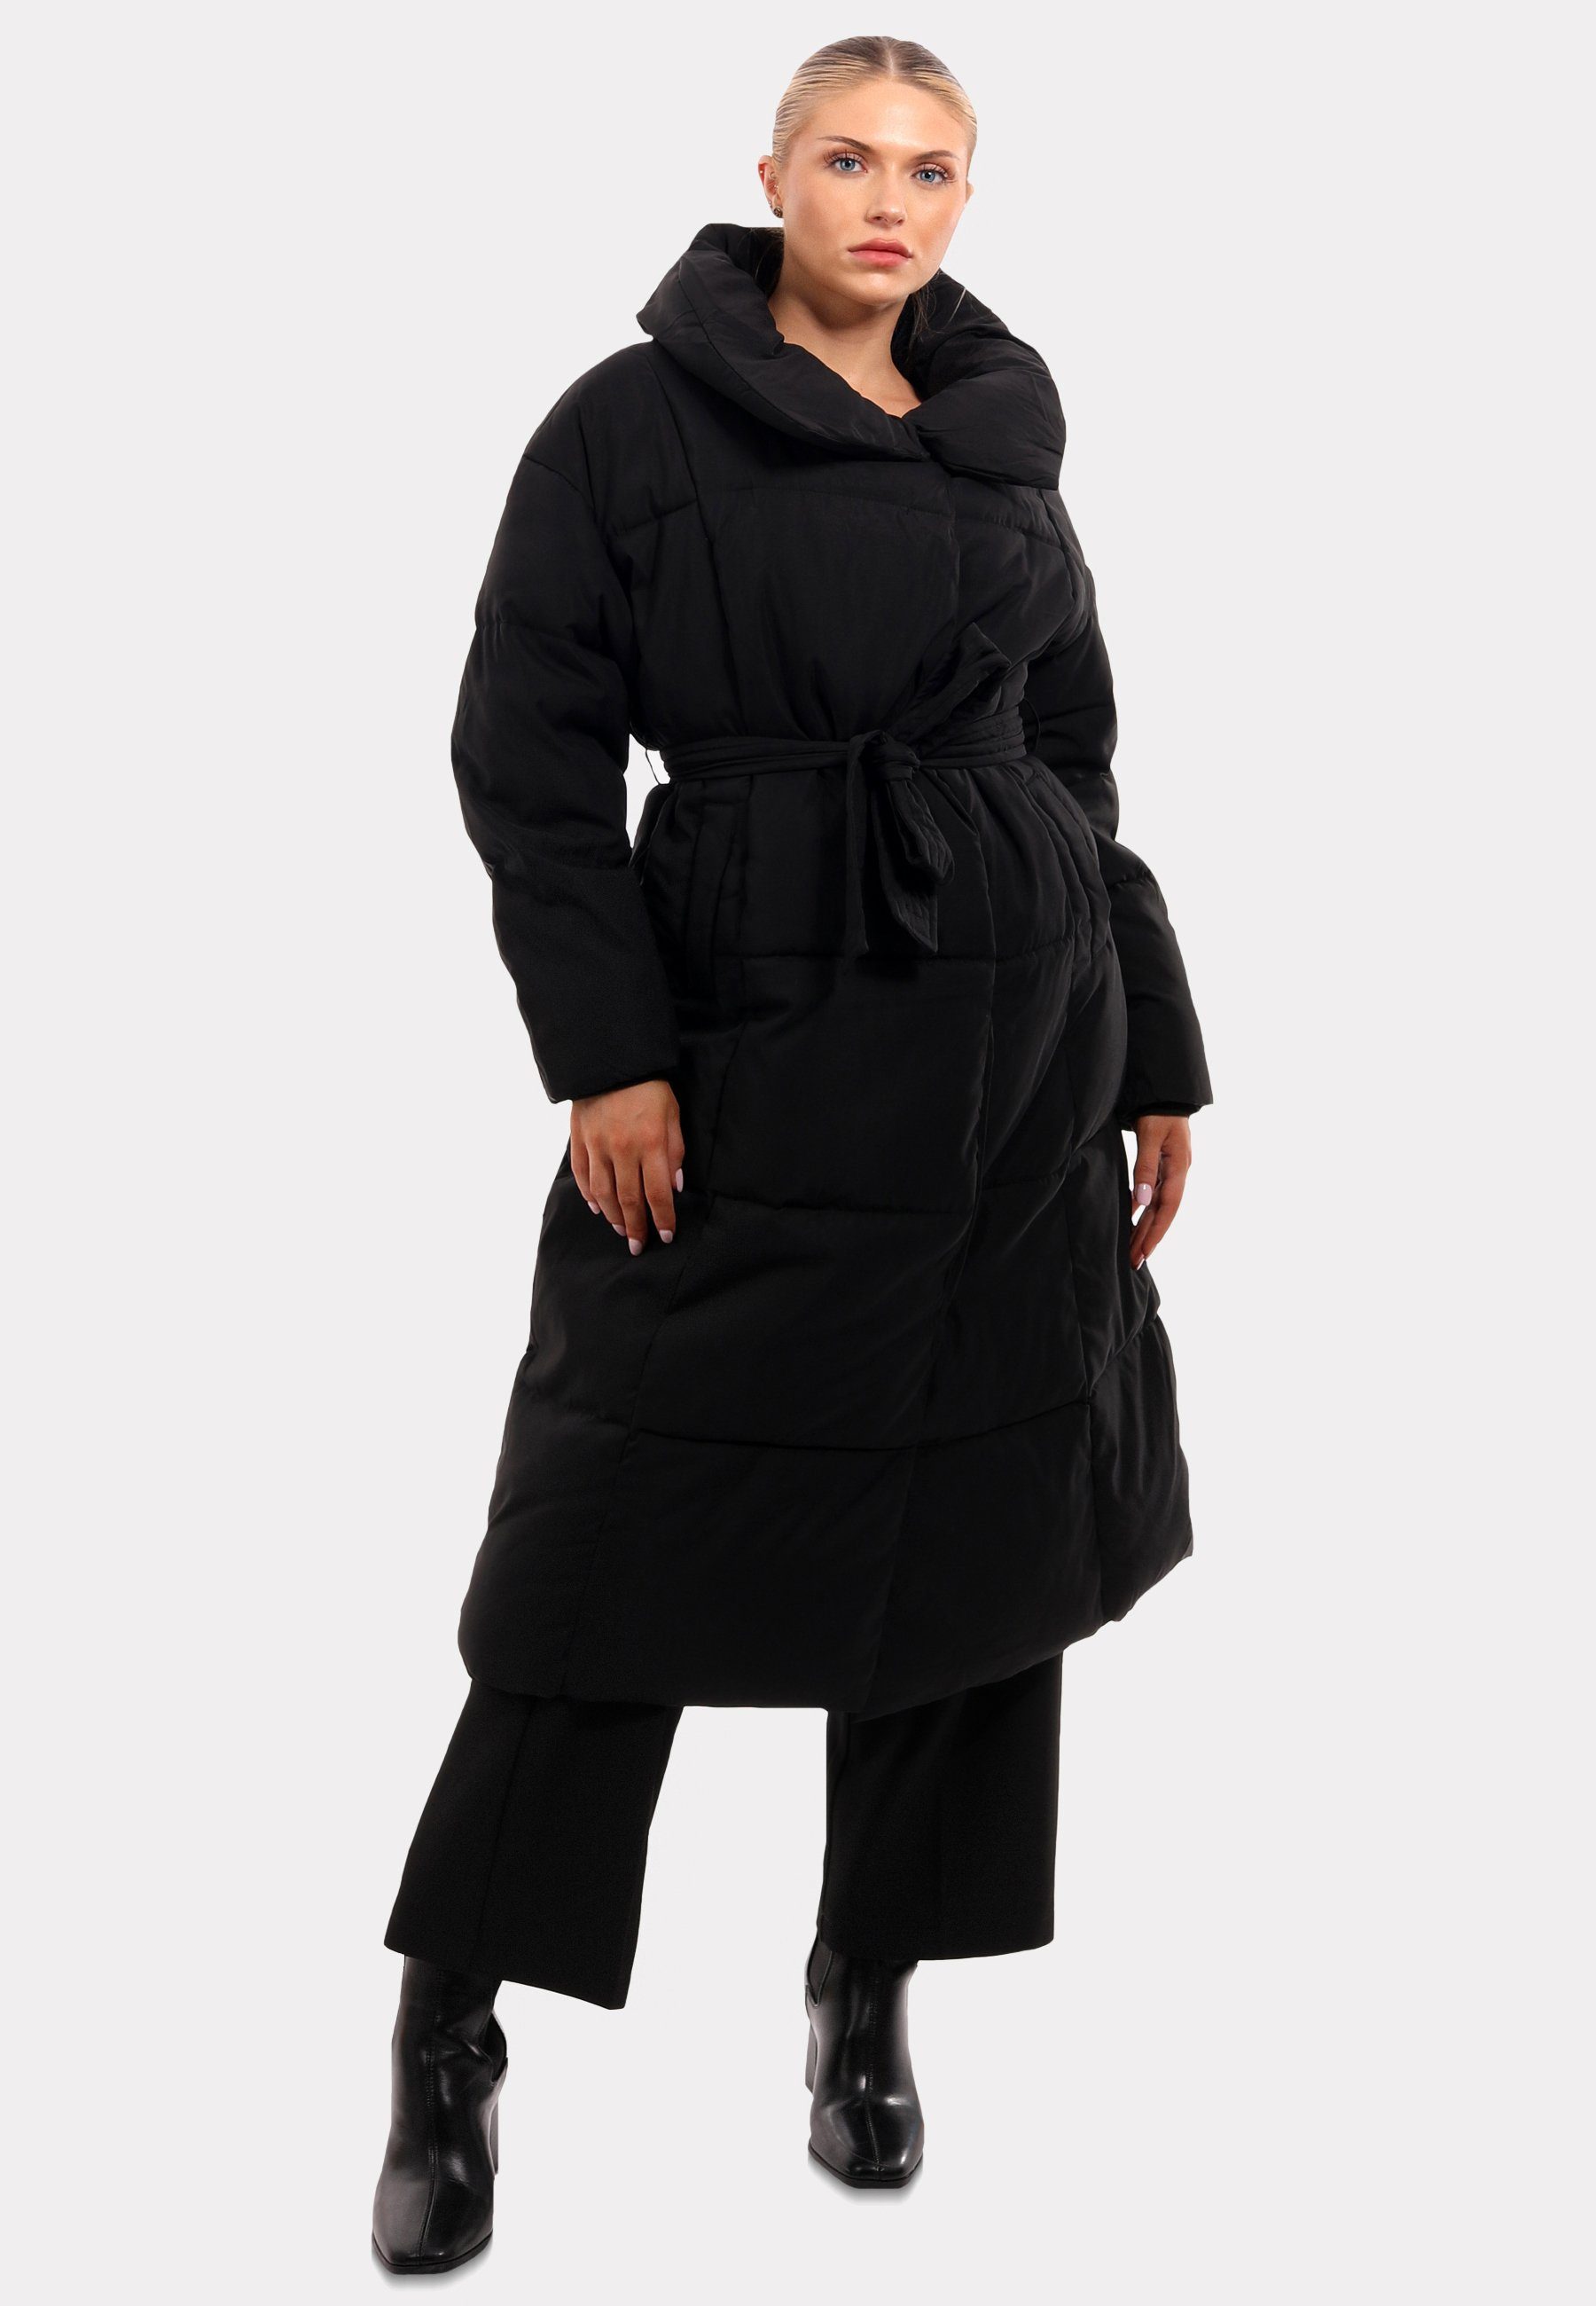 Winterliches Markantem & mit Style Design-Highlight: YC Stehkragen Wintermantel Mantel mit Fashion Stehkragen